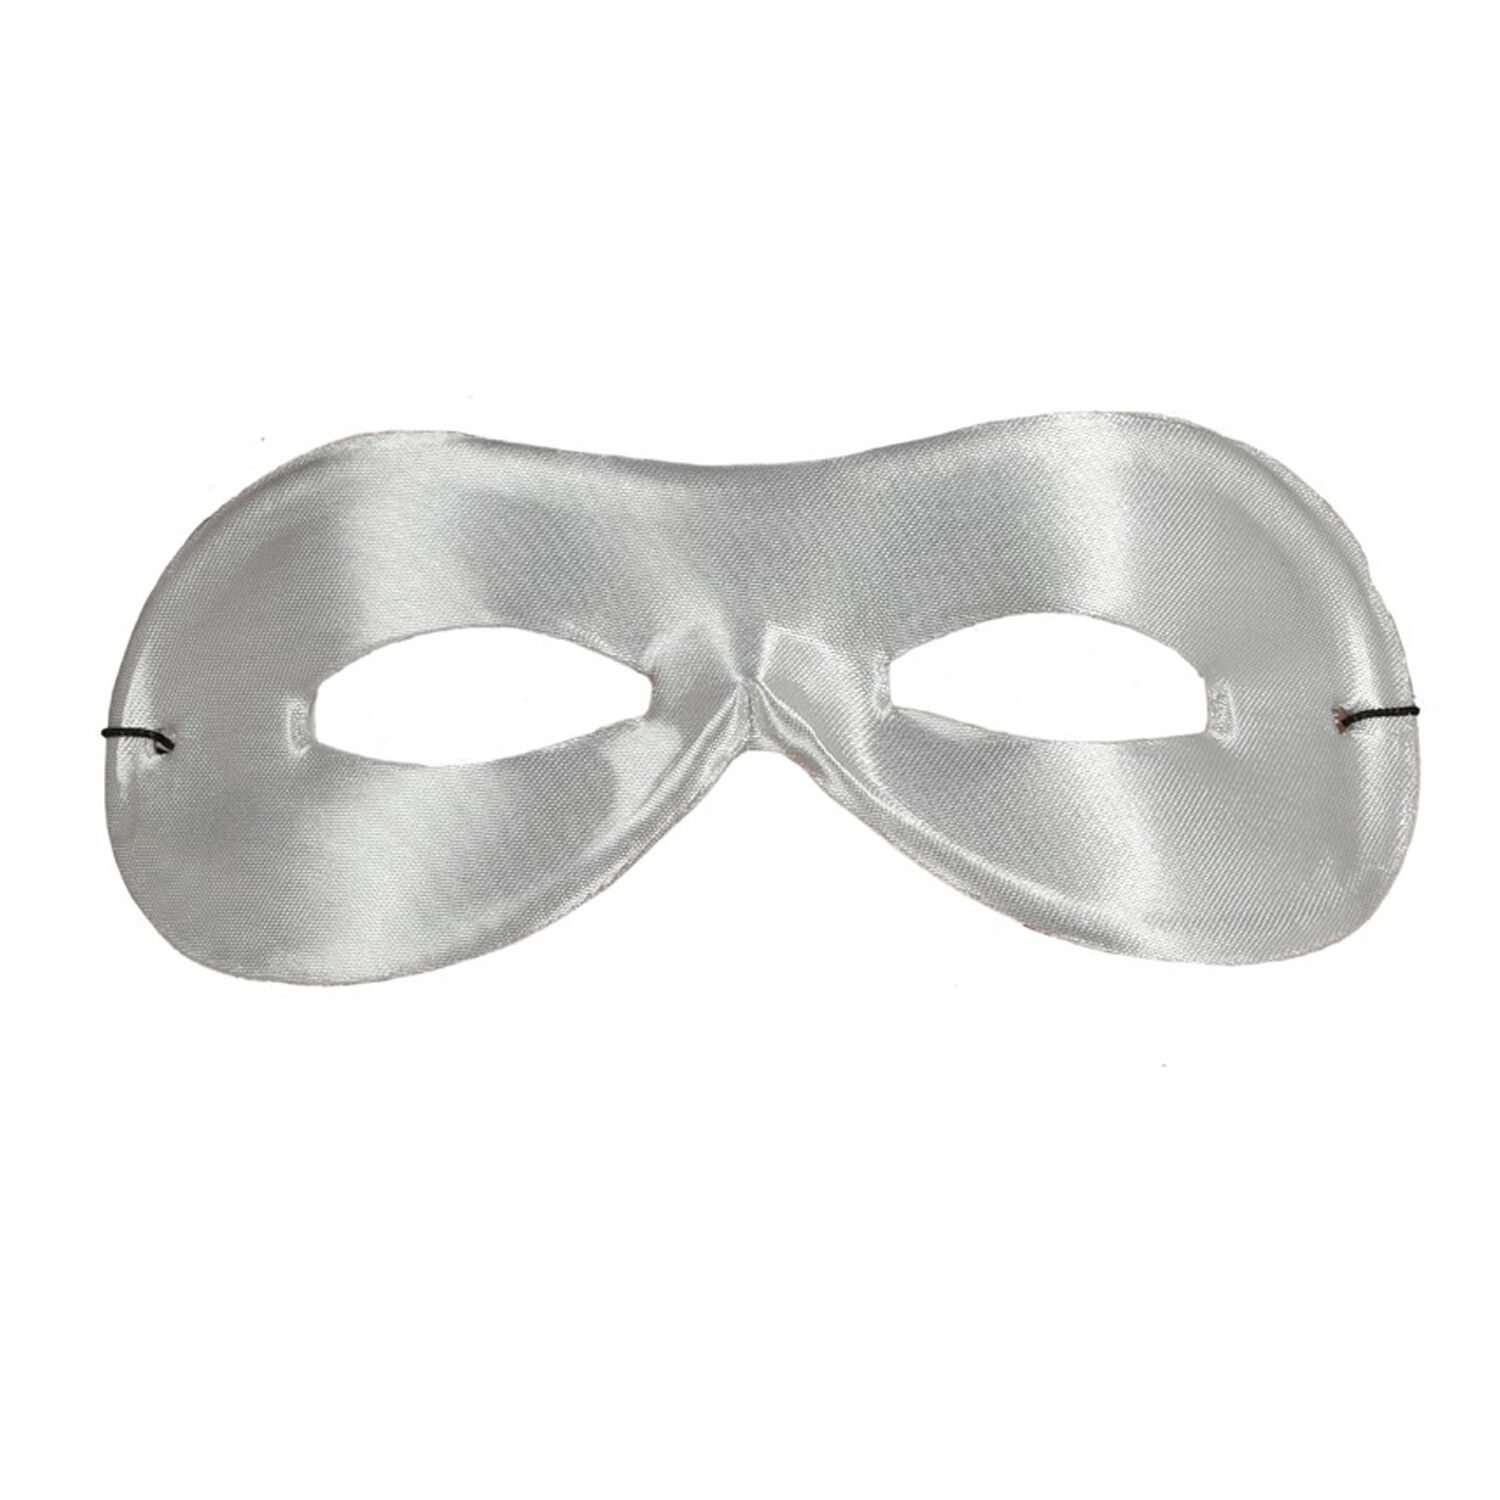 NEU Maske Bandit / Superheld, Augenmaske mit Gummizug, weiß